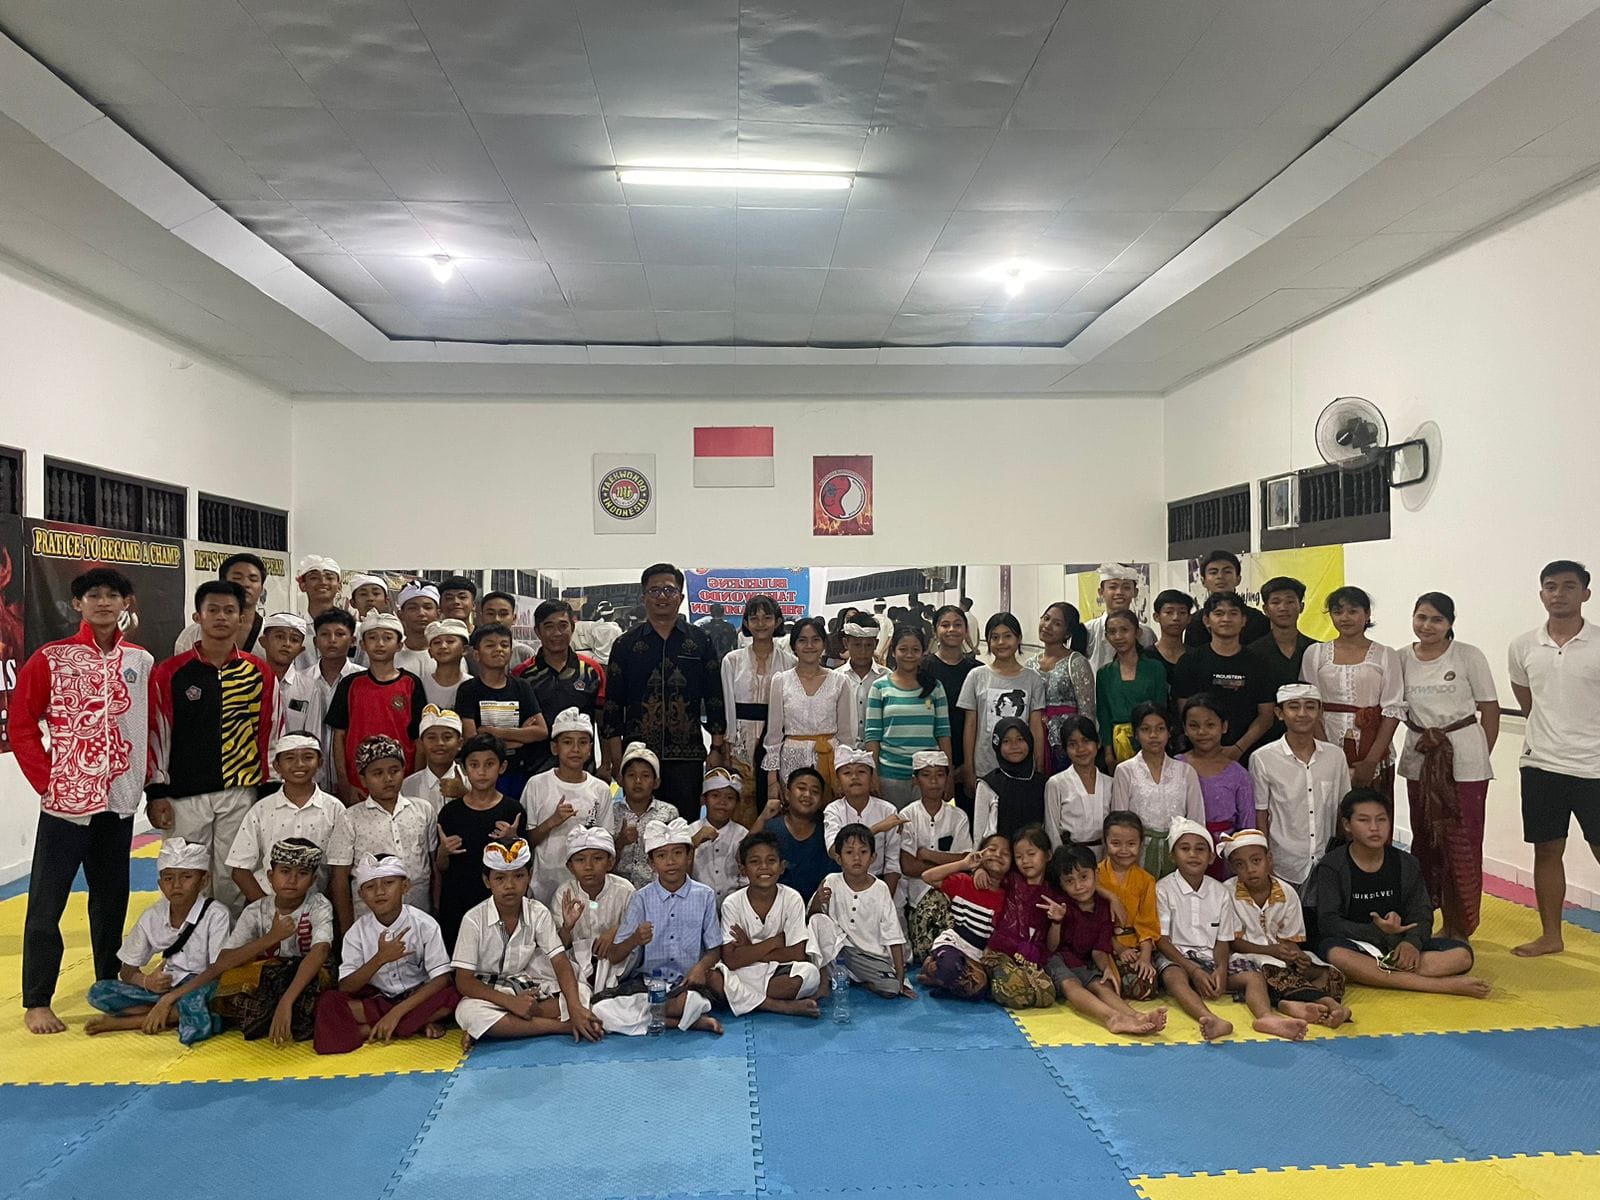 pengkab-ti-buleleng-kirim-54-atlet-ke-kejuaraan-taekwondo-internasional-di-badung